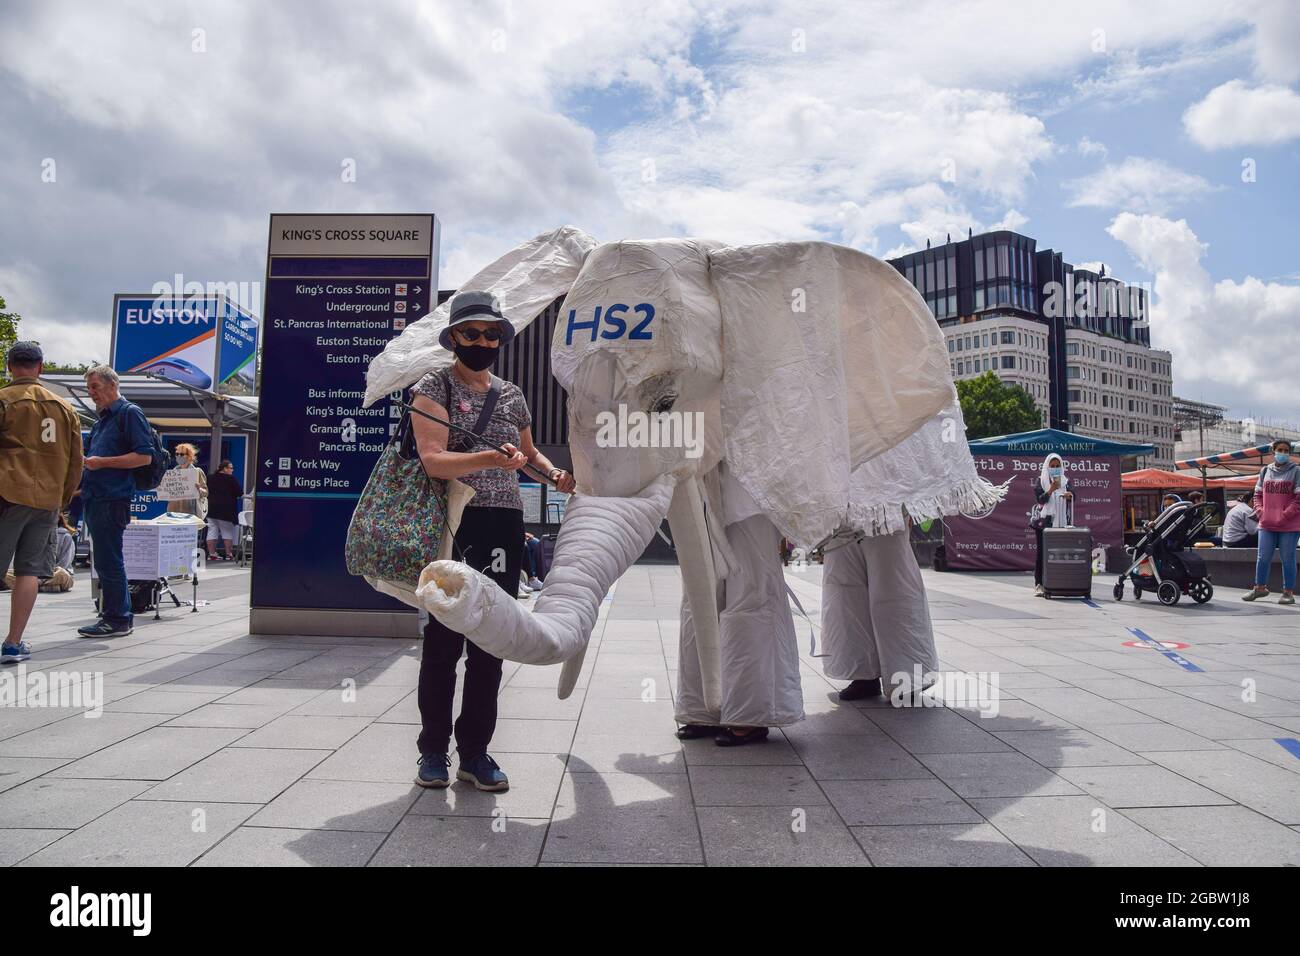 Londres, Reino Unido. 5th de agosto de 2021. Los manifestantes que llevan un traje de elefante blanco 'HS2' son conducidos fuera de la estación de tren por un manifestante. Los activistas se reunieron fuera de la estación de King's Cross en protesta contra el nuevo sistema ferroviario High Speed 2 (HS2), que los ecologistas dicen que será 'ecológicamente devastador' y costará a los contribuyentes £170 mil millones. (Crédito: Vuk Valcic/Alamy Live News) Foto de stock